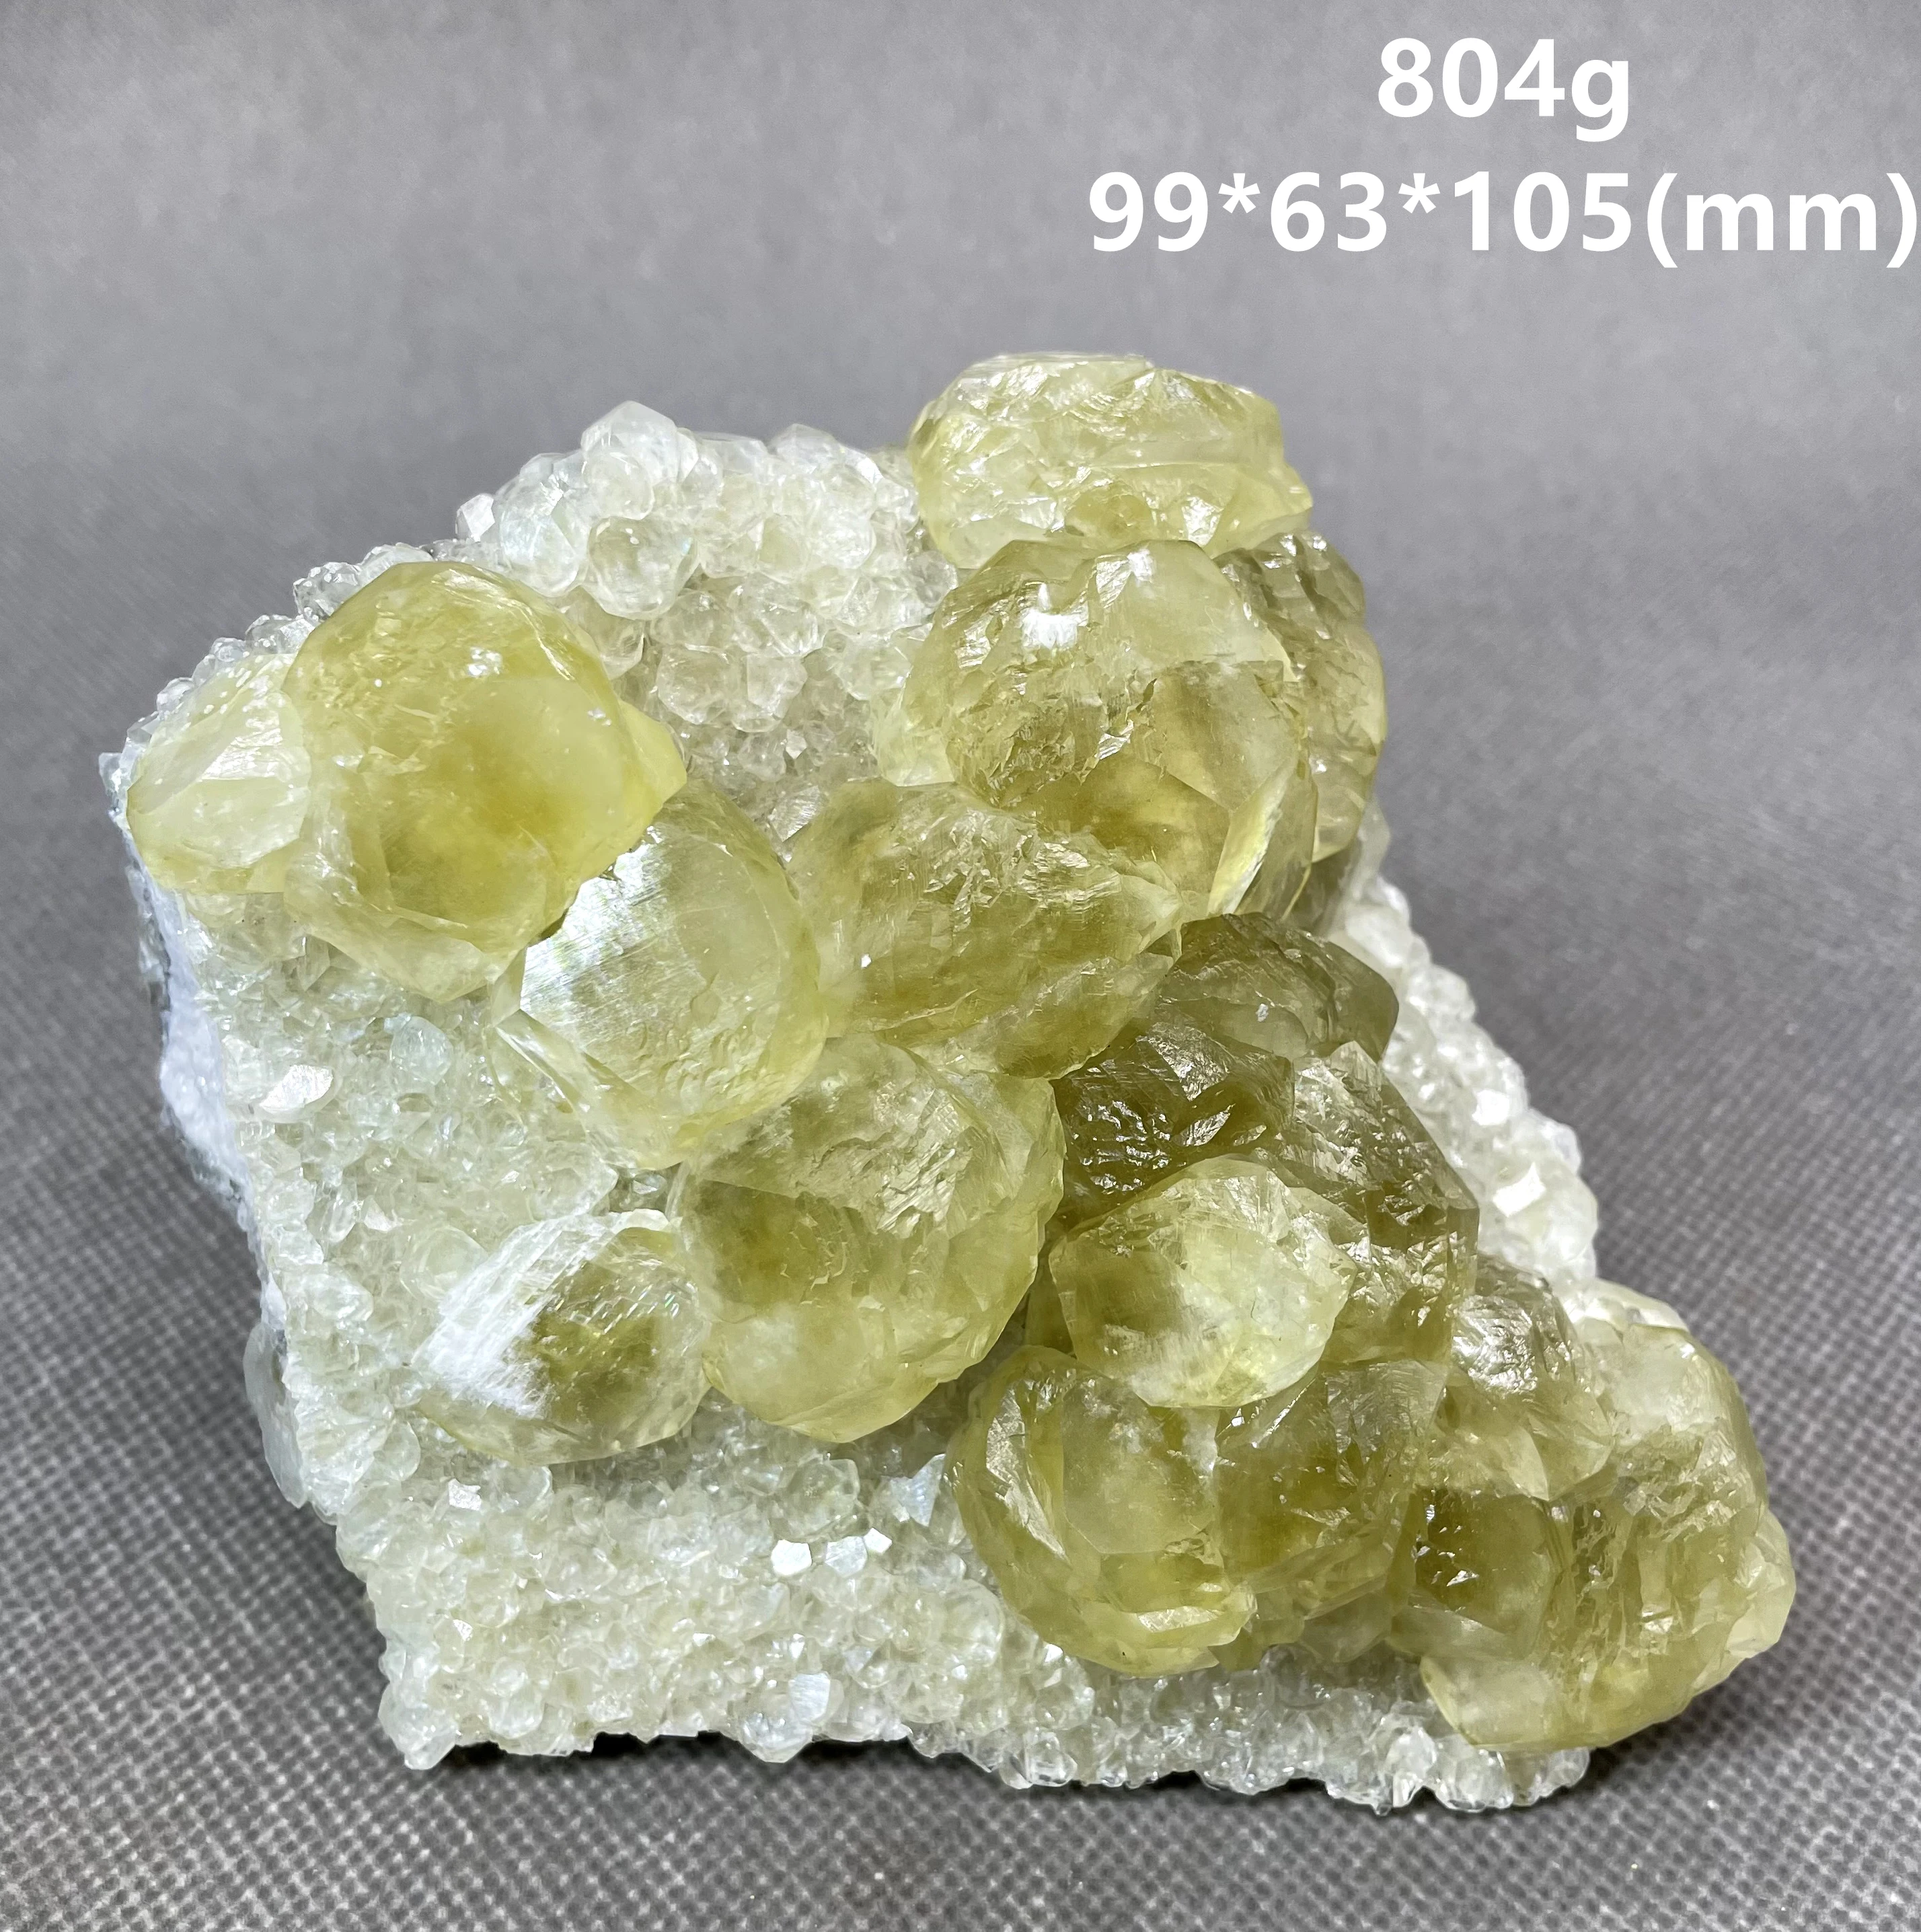 

NEW! BIG! 100% natural “Benz” Fluorescent calcite mineral specimen stones and crystals healing crystals quartz gemstones